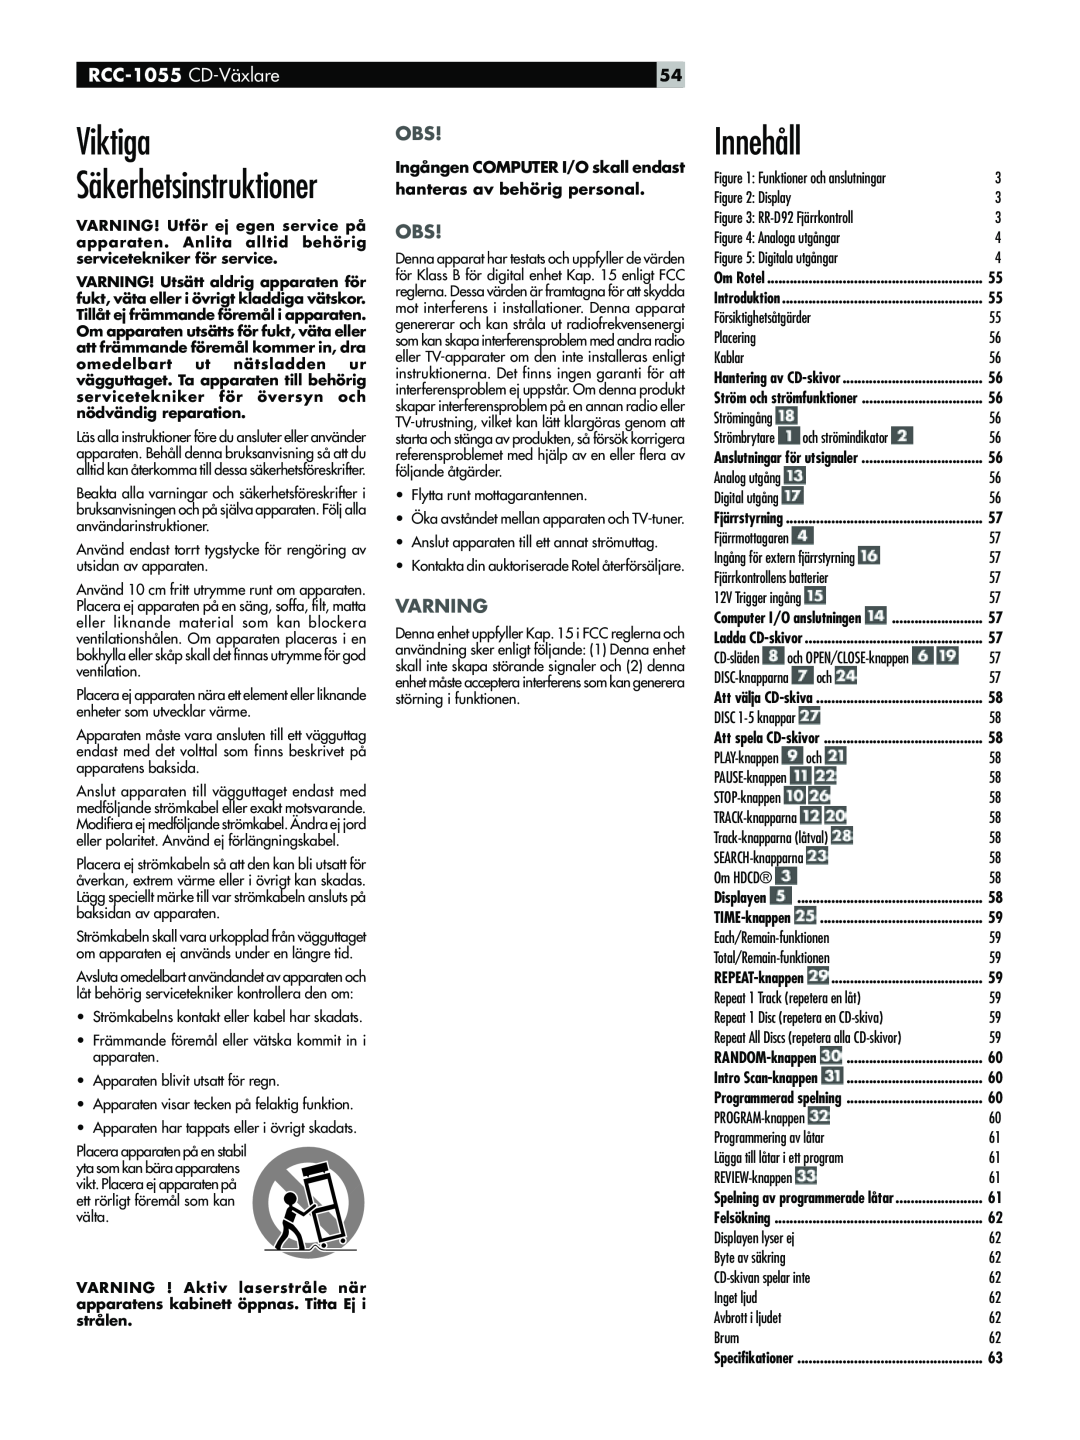 Rotel owner manual Viktiga SŠkerhetsinstruktioner, InnehŒll, RCC-1055 CD-VŠxlare, Varning 